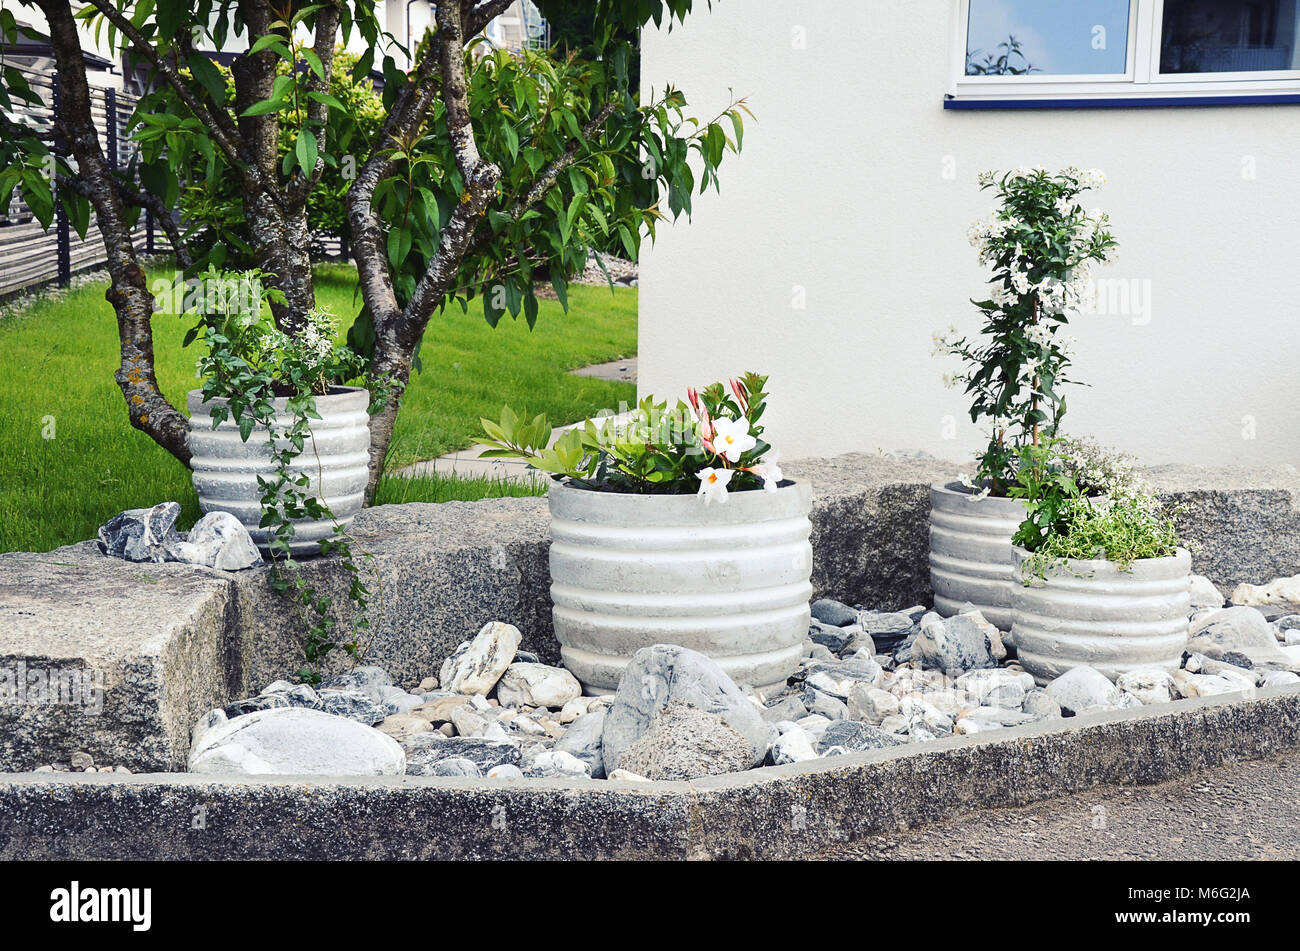 Stein garten Anordnung im Haus Eingang mit grünen und weißen Pflanzen und  konkrete Blumentöpfe Stockfotografie - Alamy